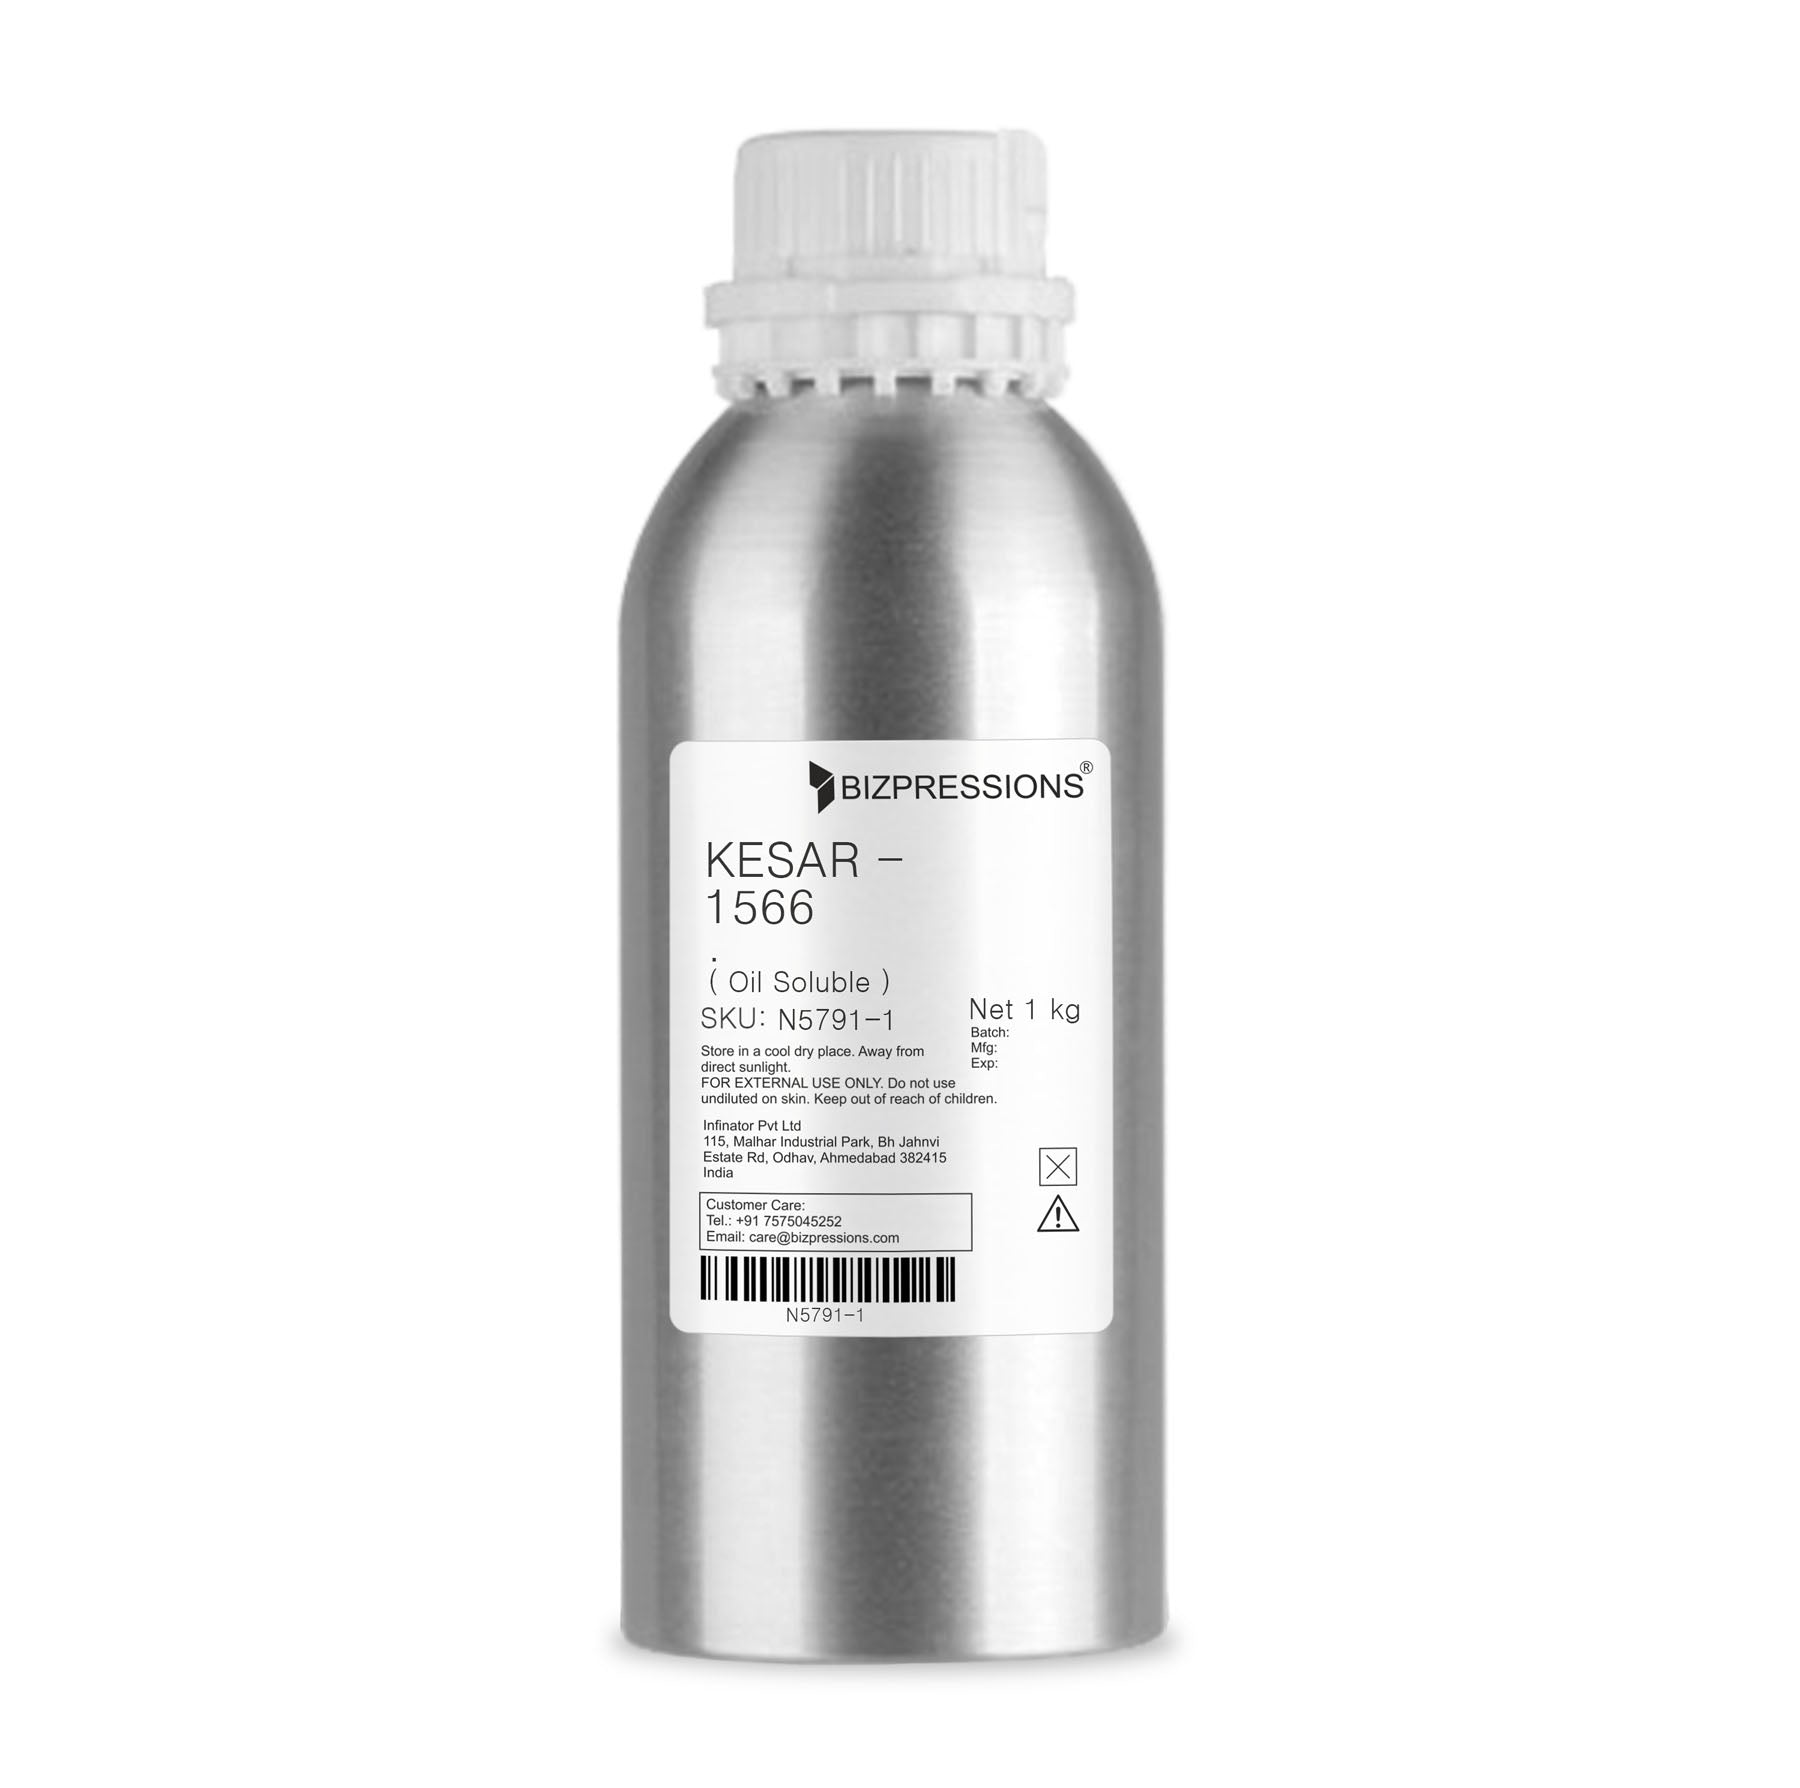 KESAR - 1566 - Fragrance ( Oil Soluble ) - 1 kg